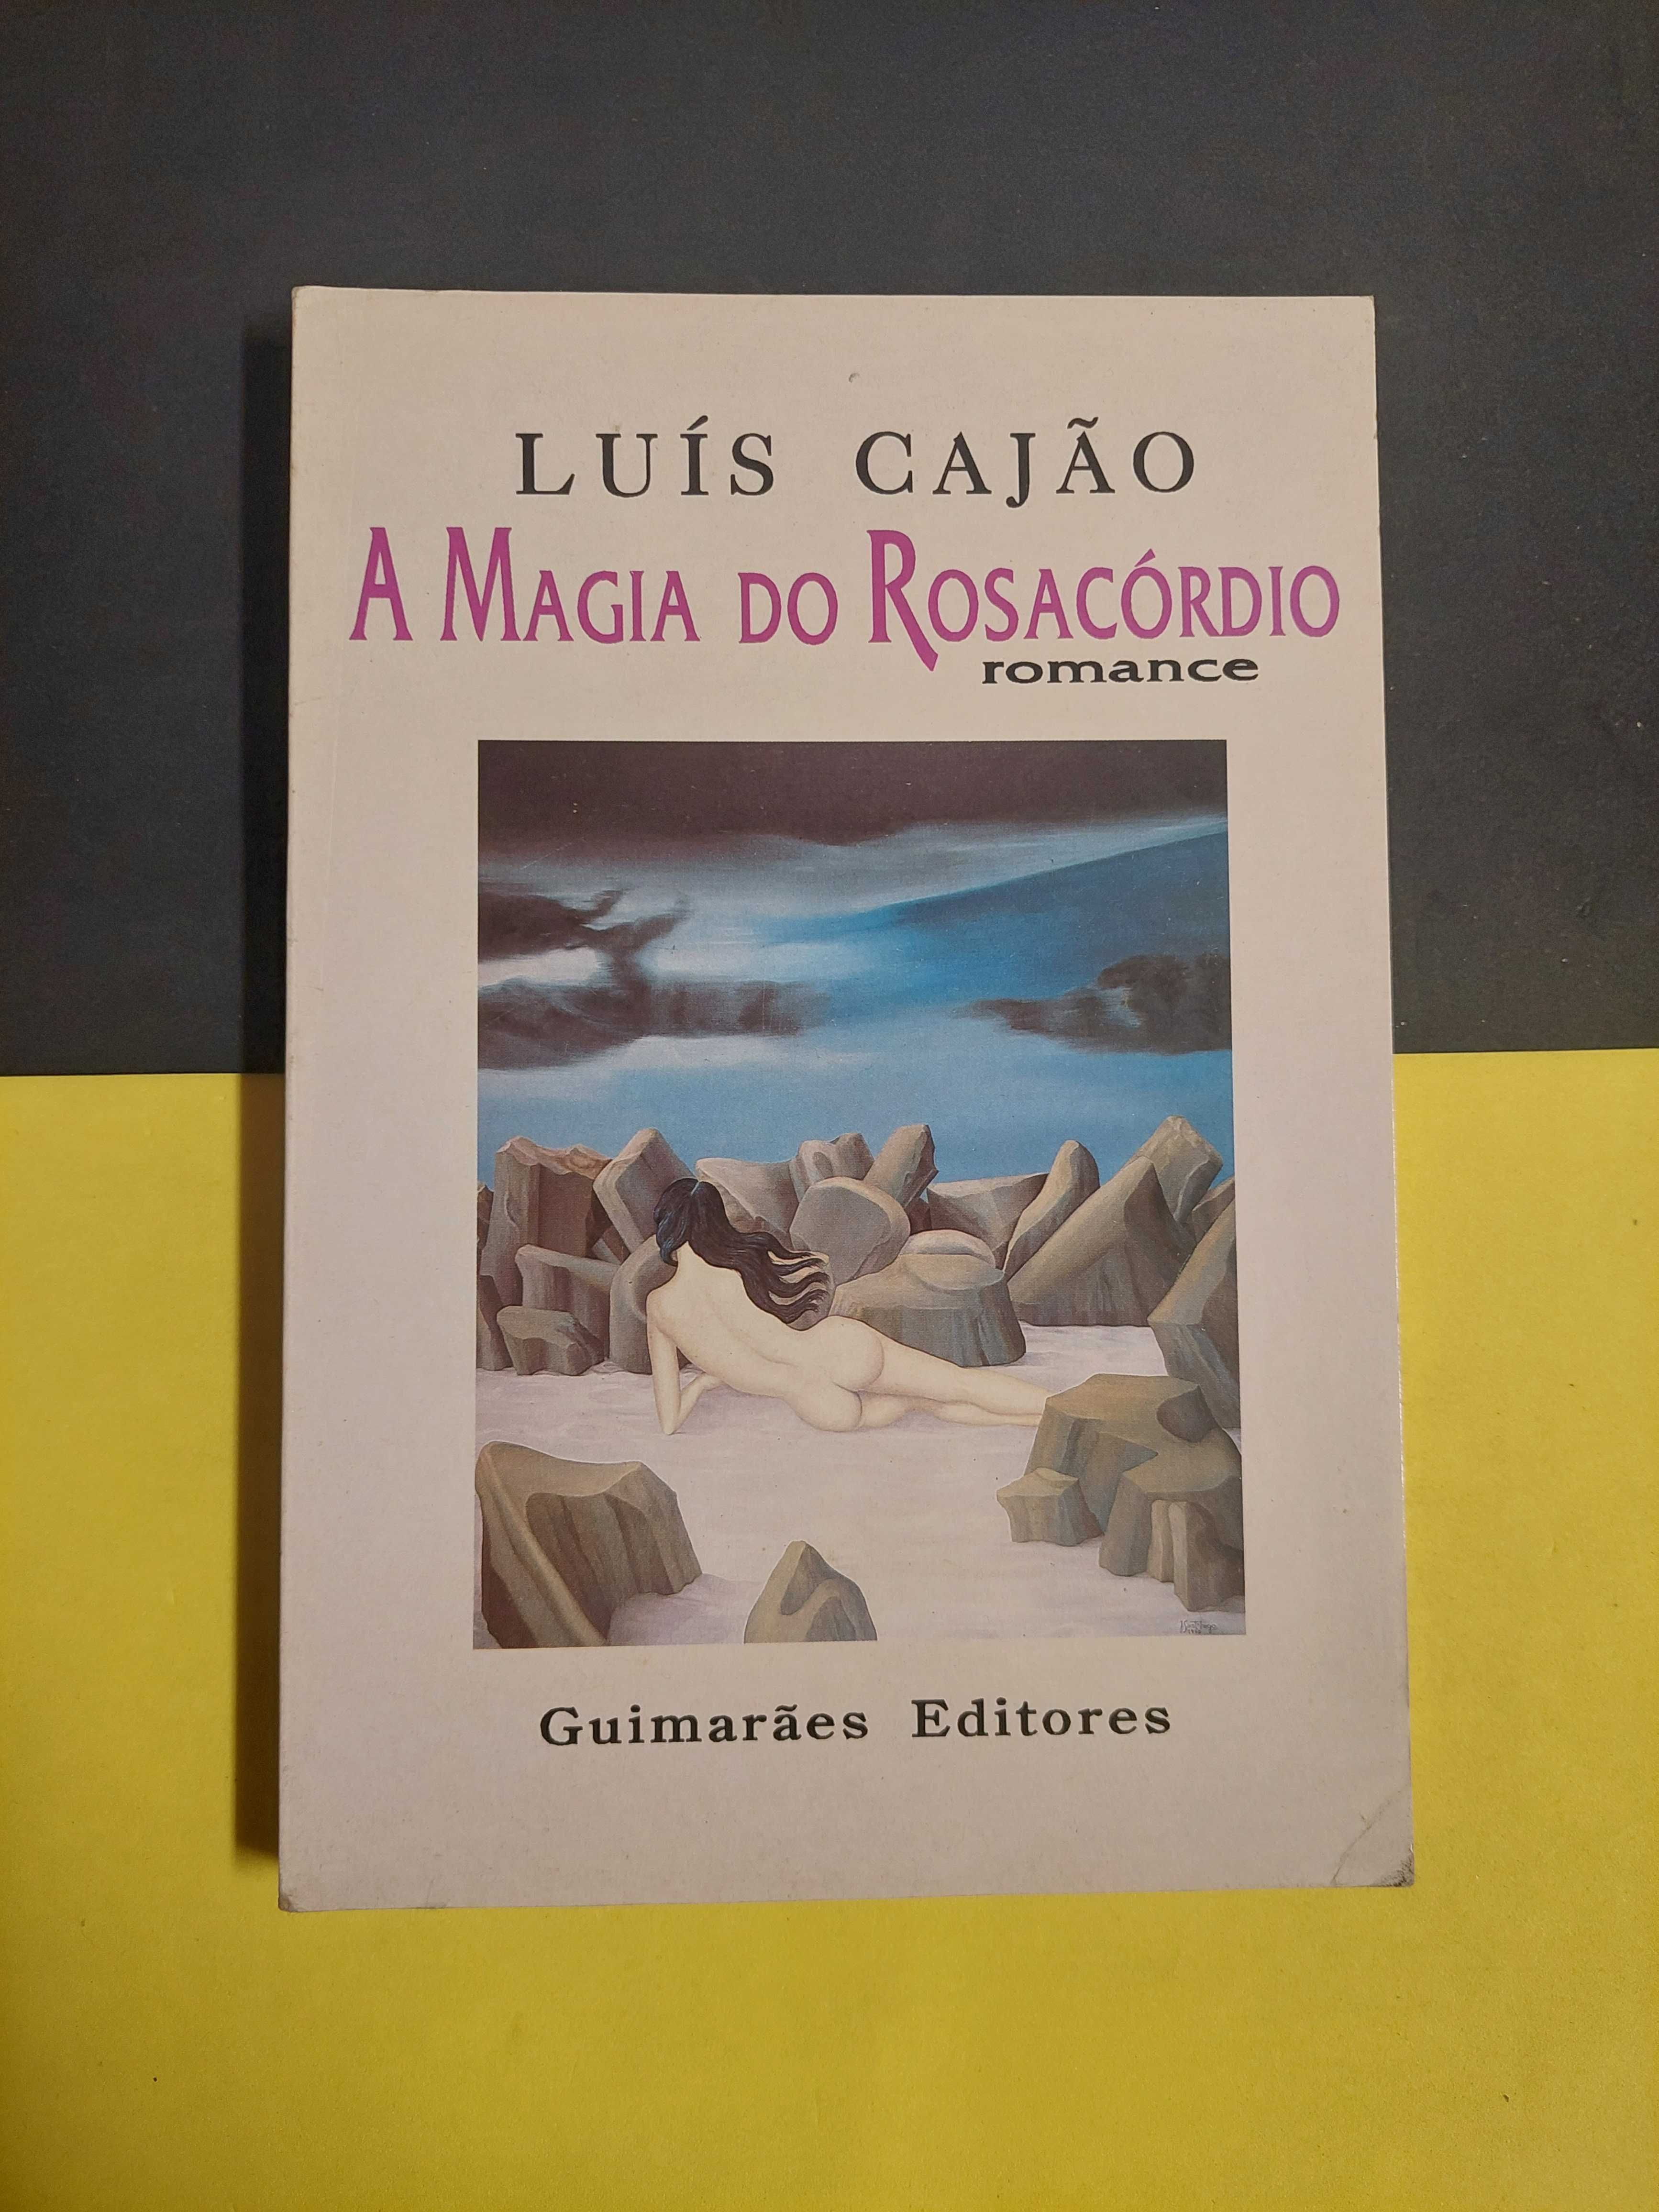 Luís Gajão - A magia do rosacórdio